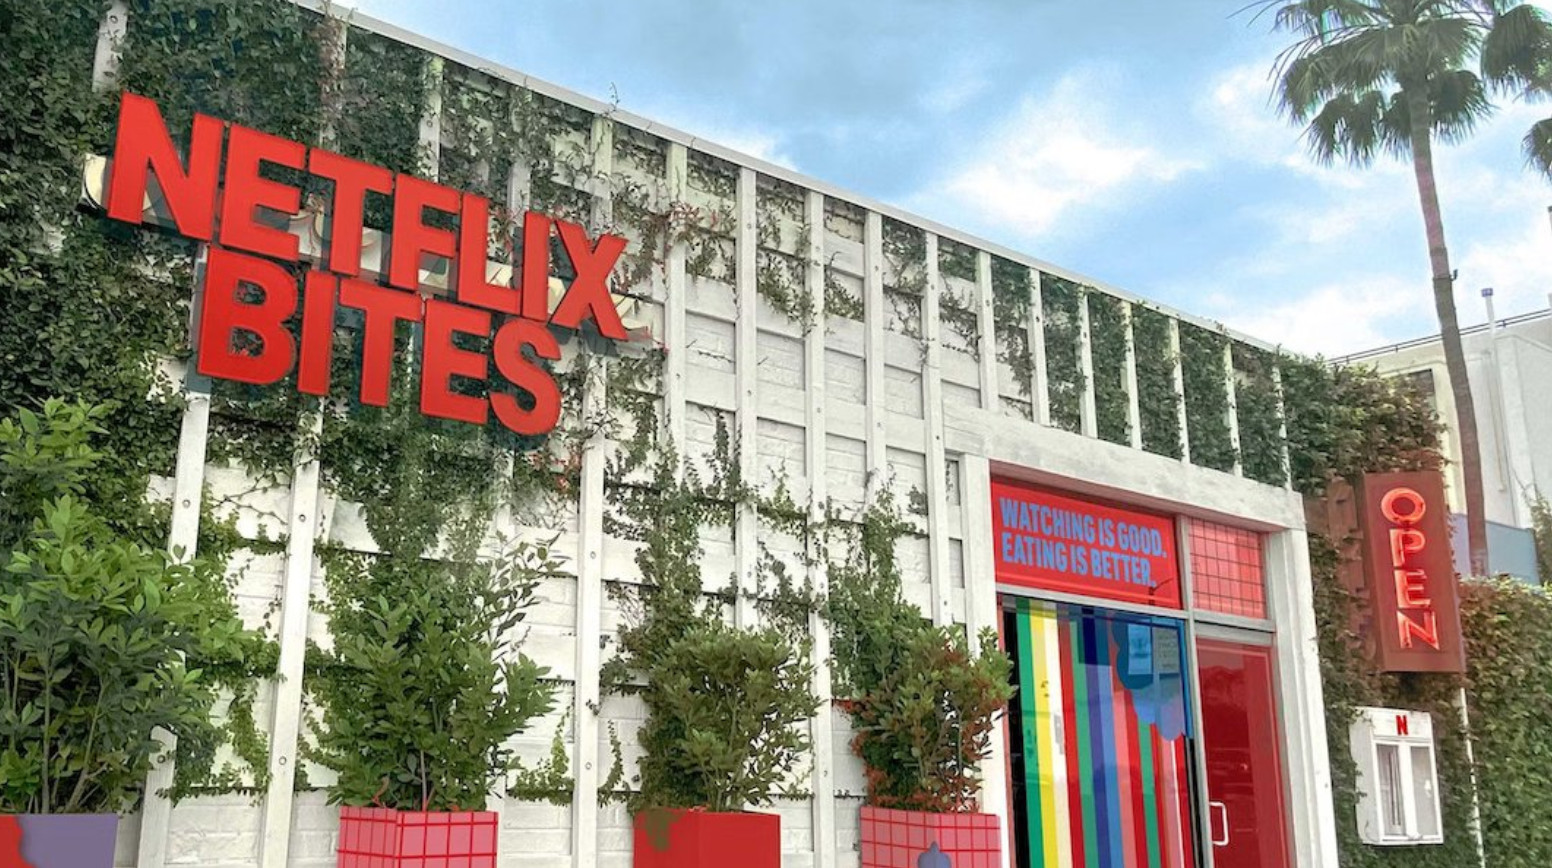 Netflix Bites: Νέο επιχειρηματικό βήμα για την εταιρεία - Γιατί «η θέαση είναι καλή, αλλά το φαγητό καλύτερο»